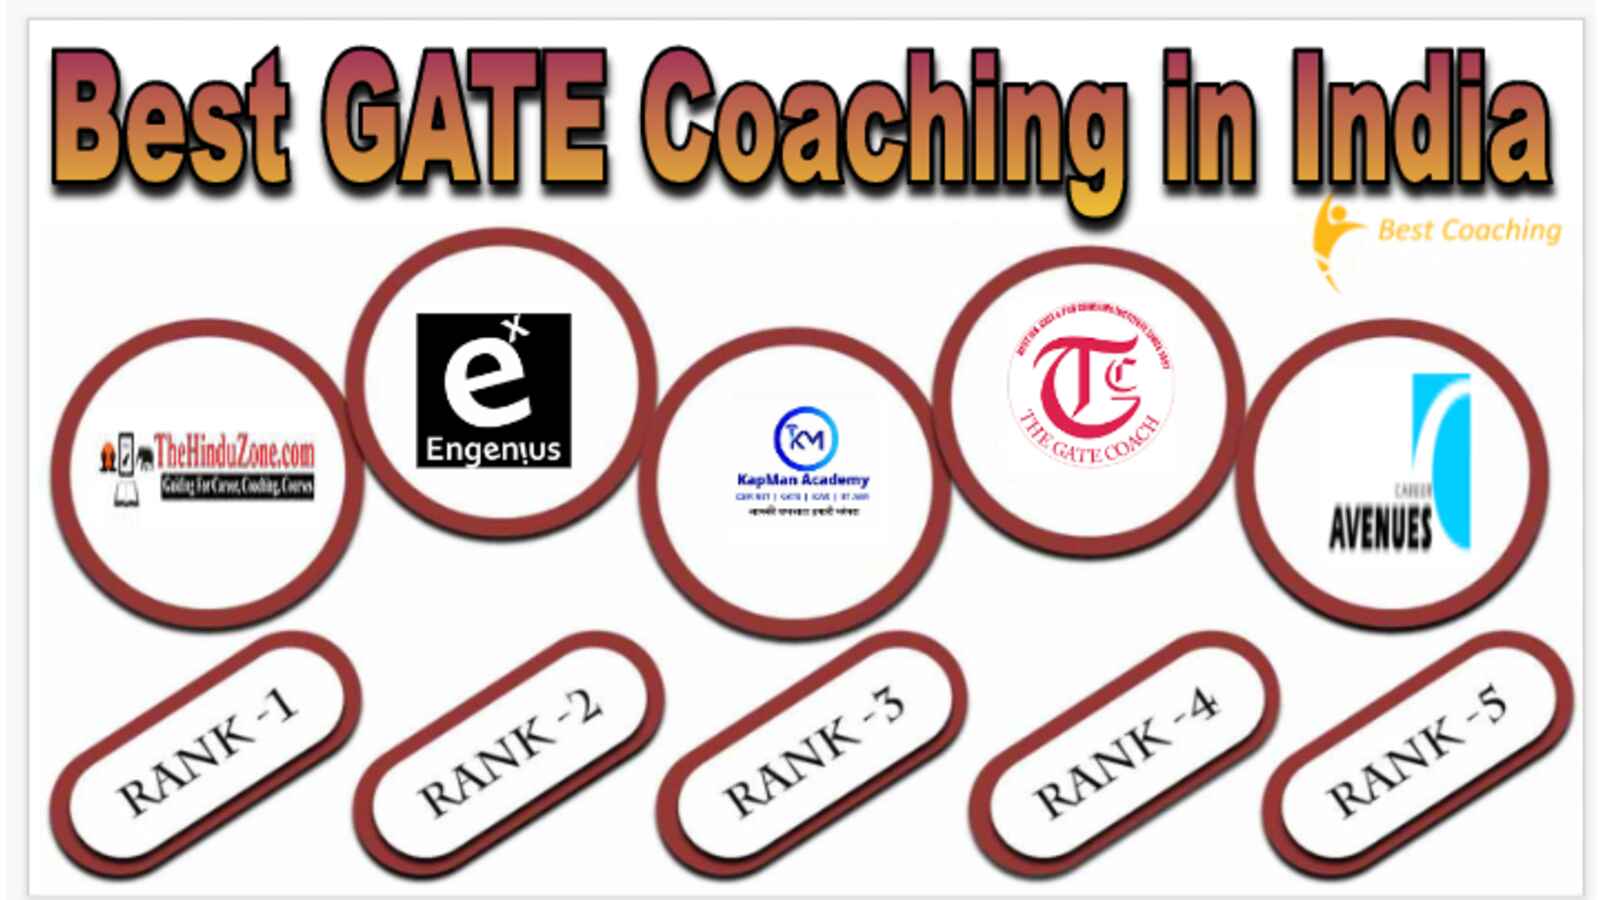 Best GATE Coaching in India